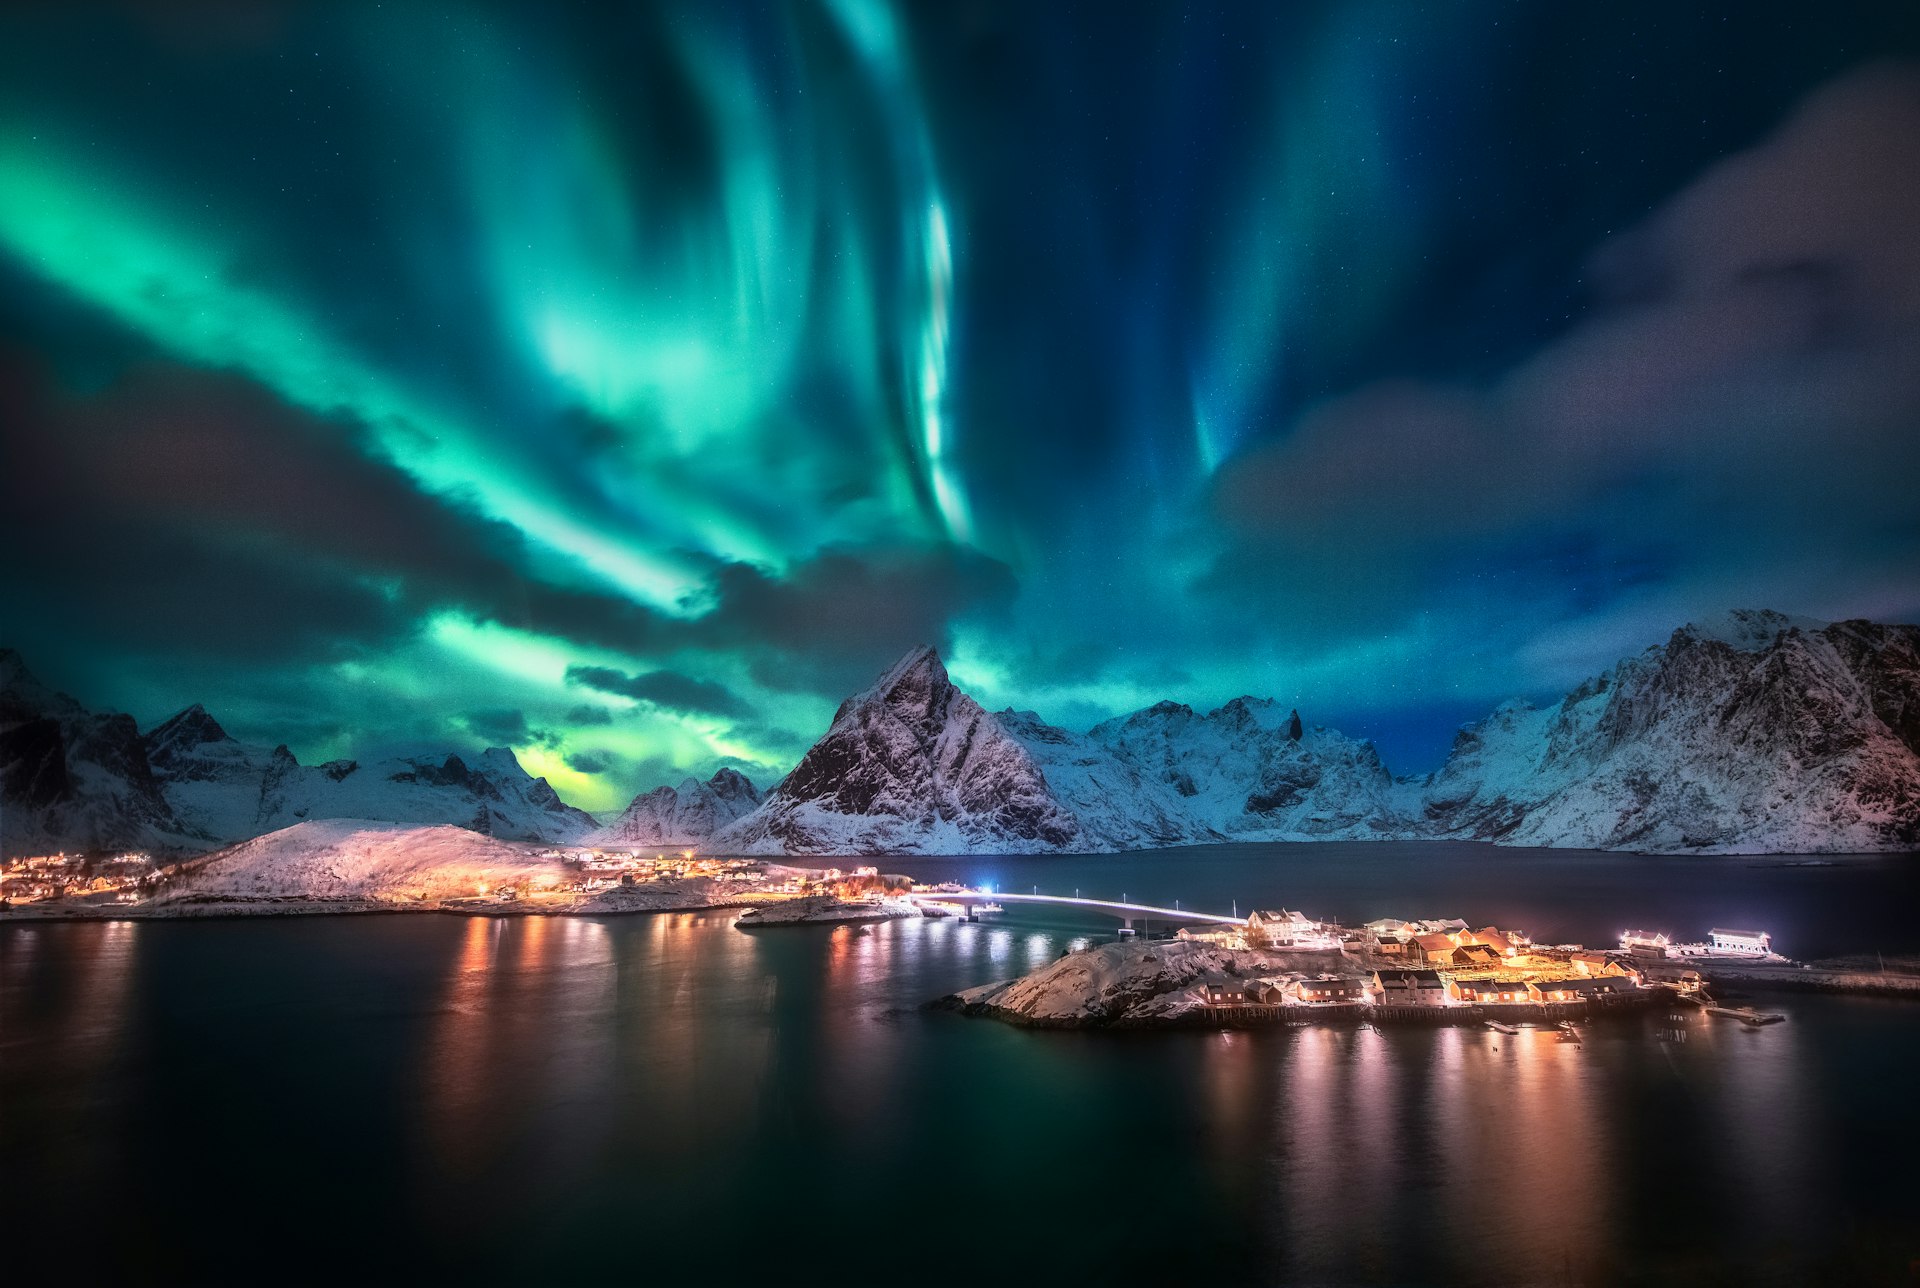 Aurora borealis seen over the Lofoten Islands in Norway